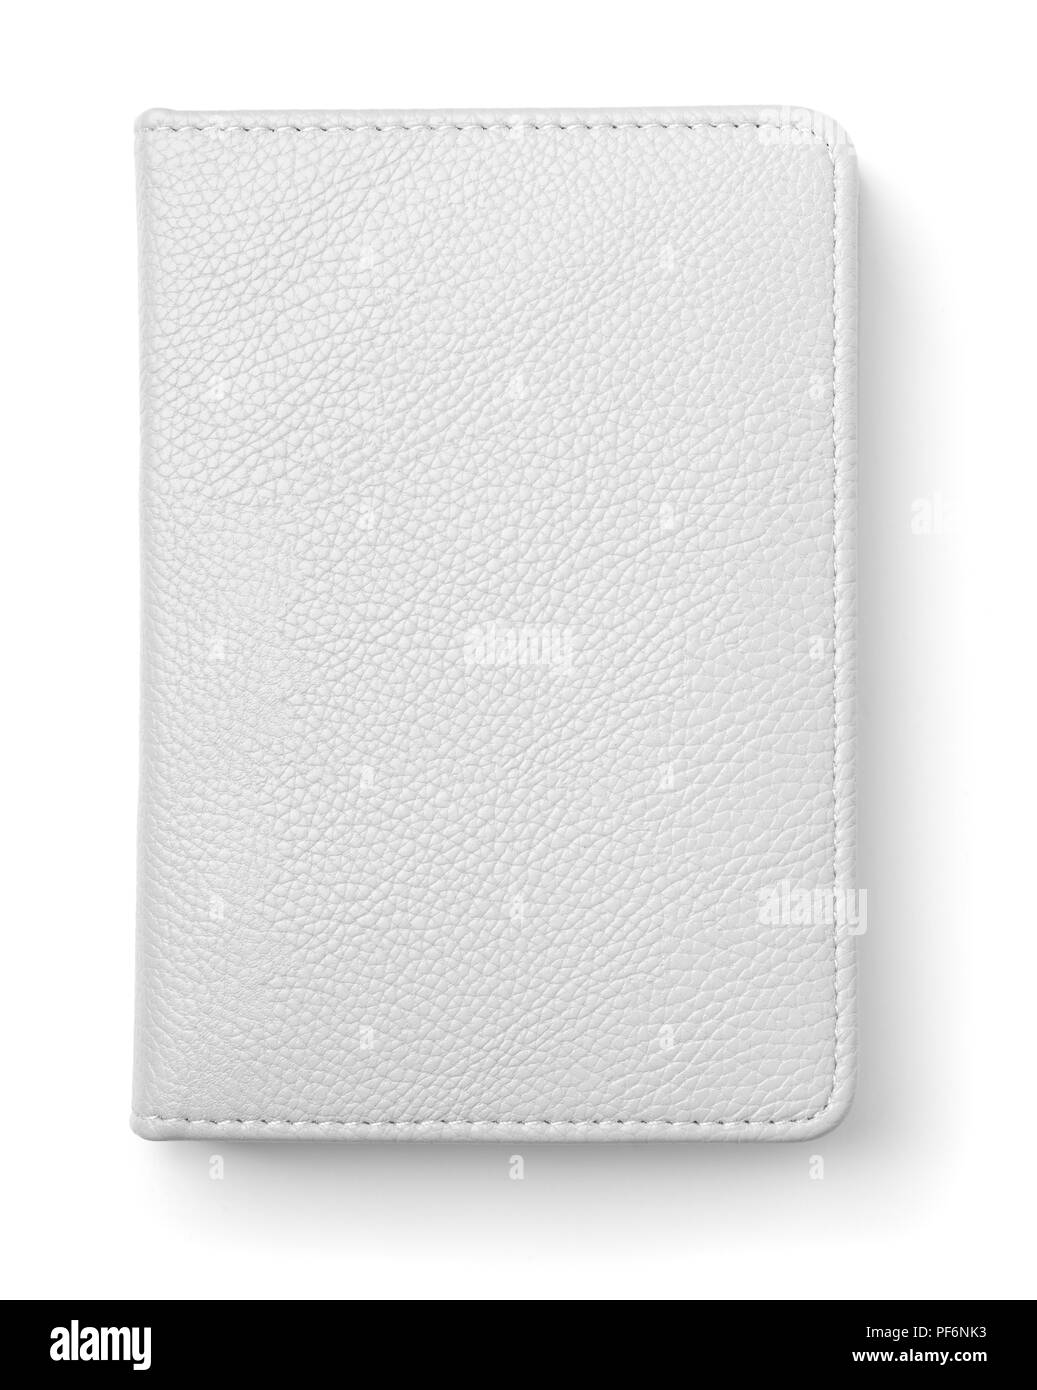 Vista superiore della pelle bianca isolata del notebook su bianco Foto Stock